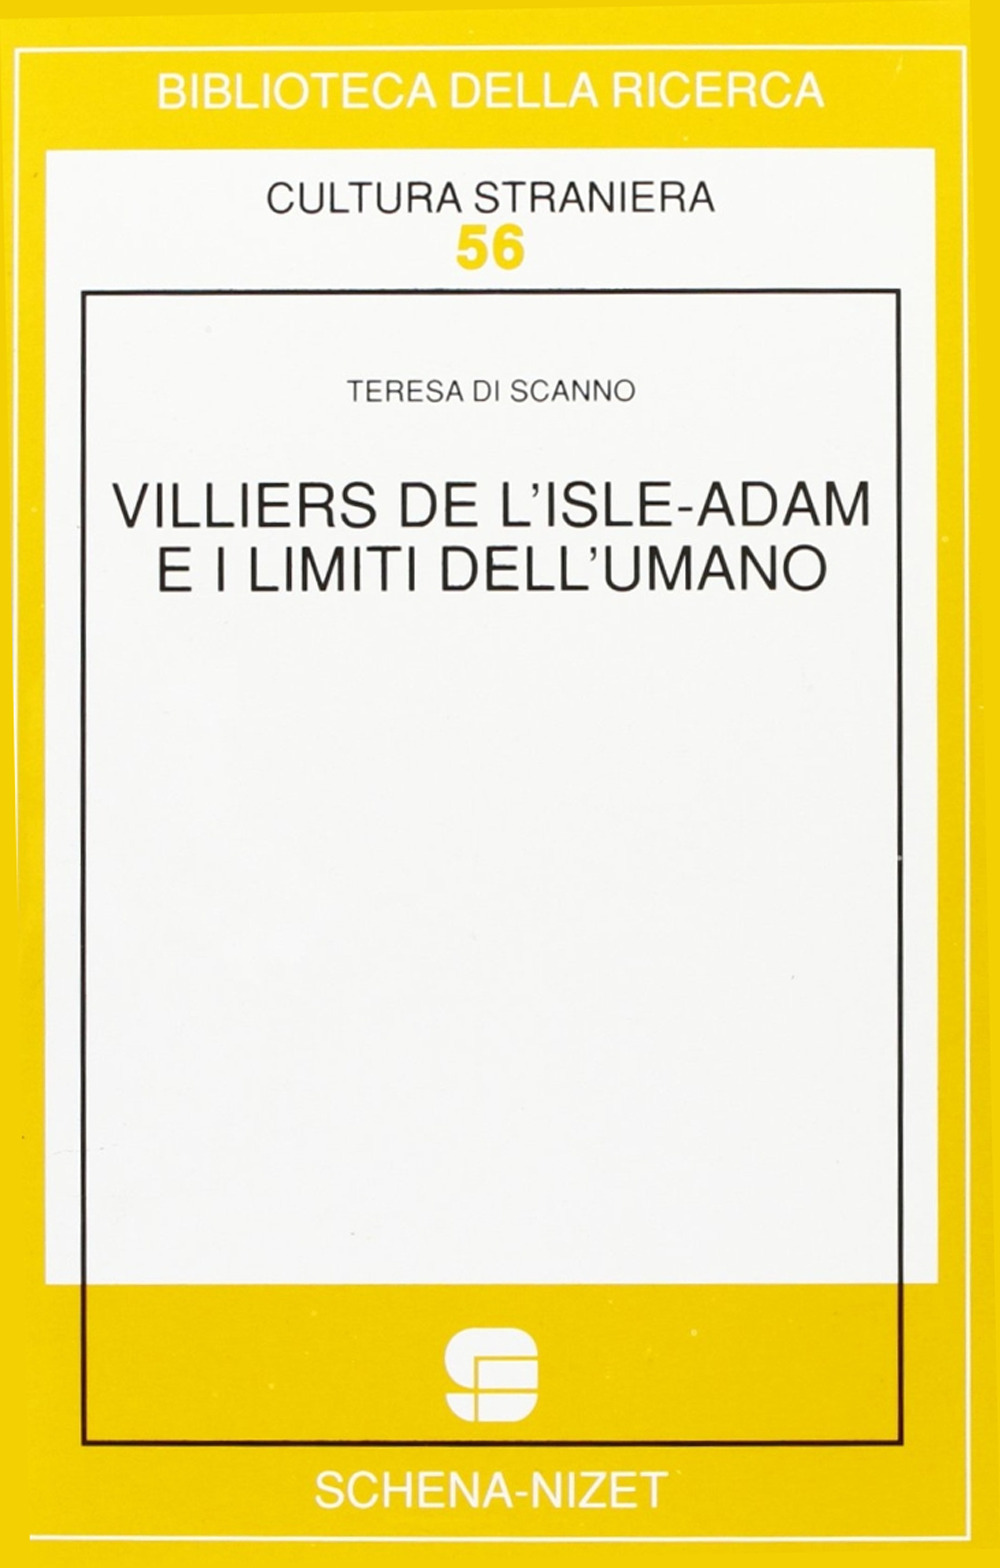 Villiers de l'Isle-Adam e i limiti dell'umano